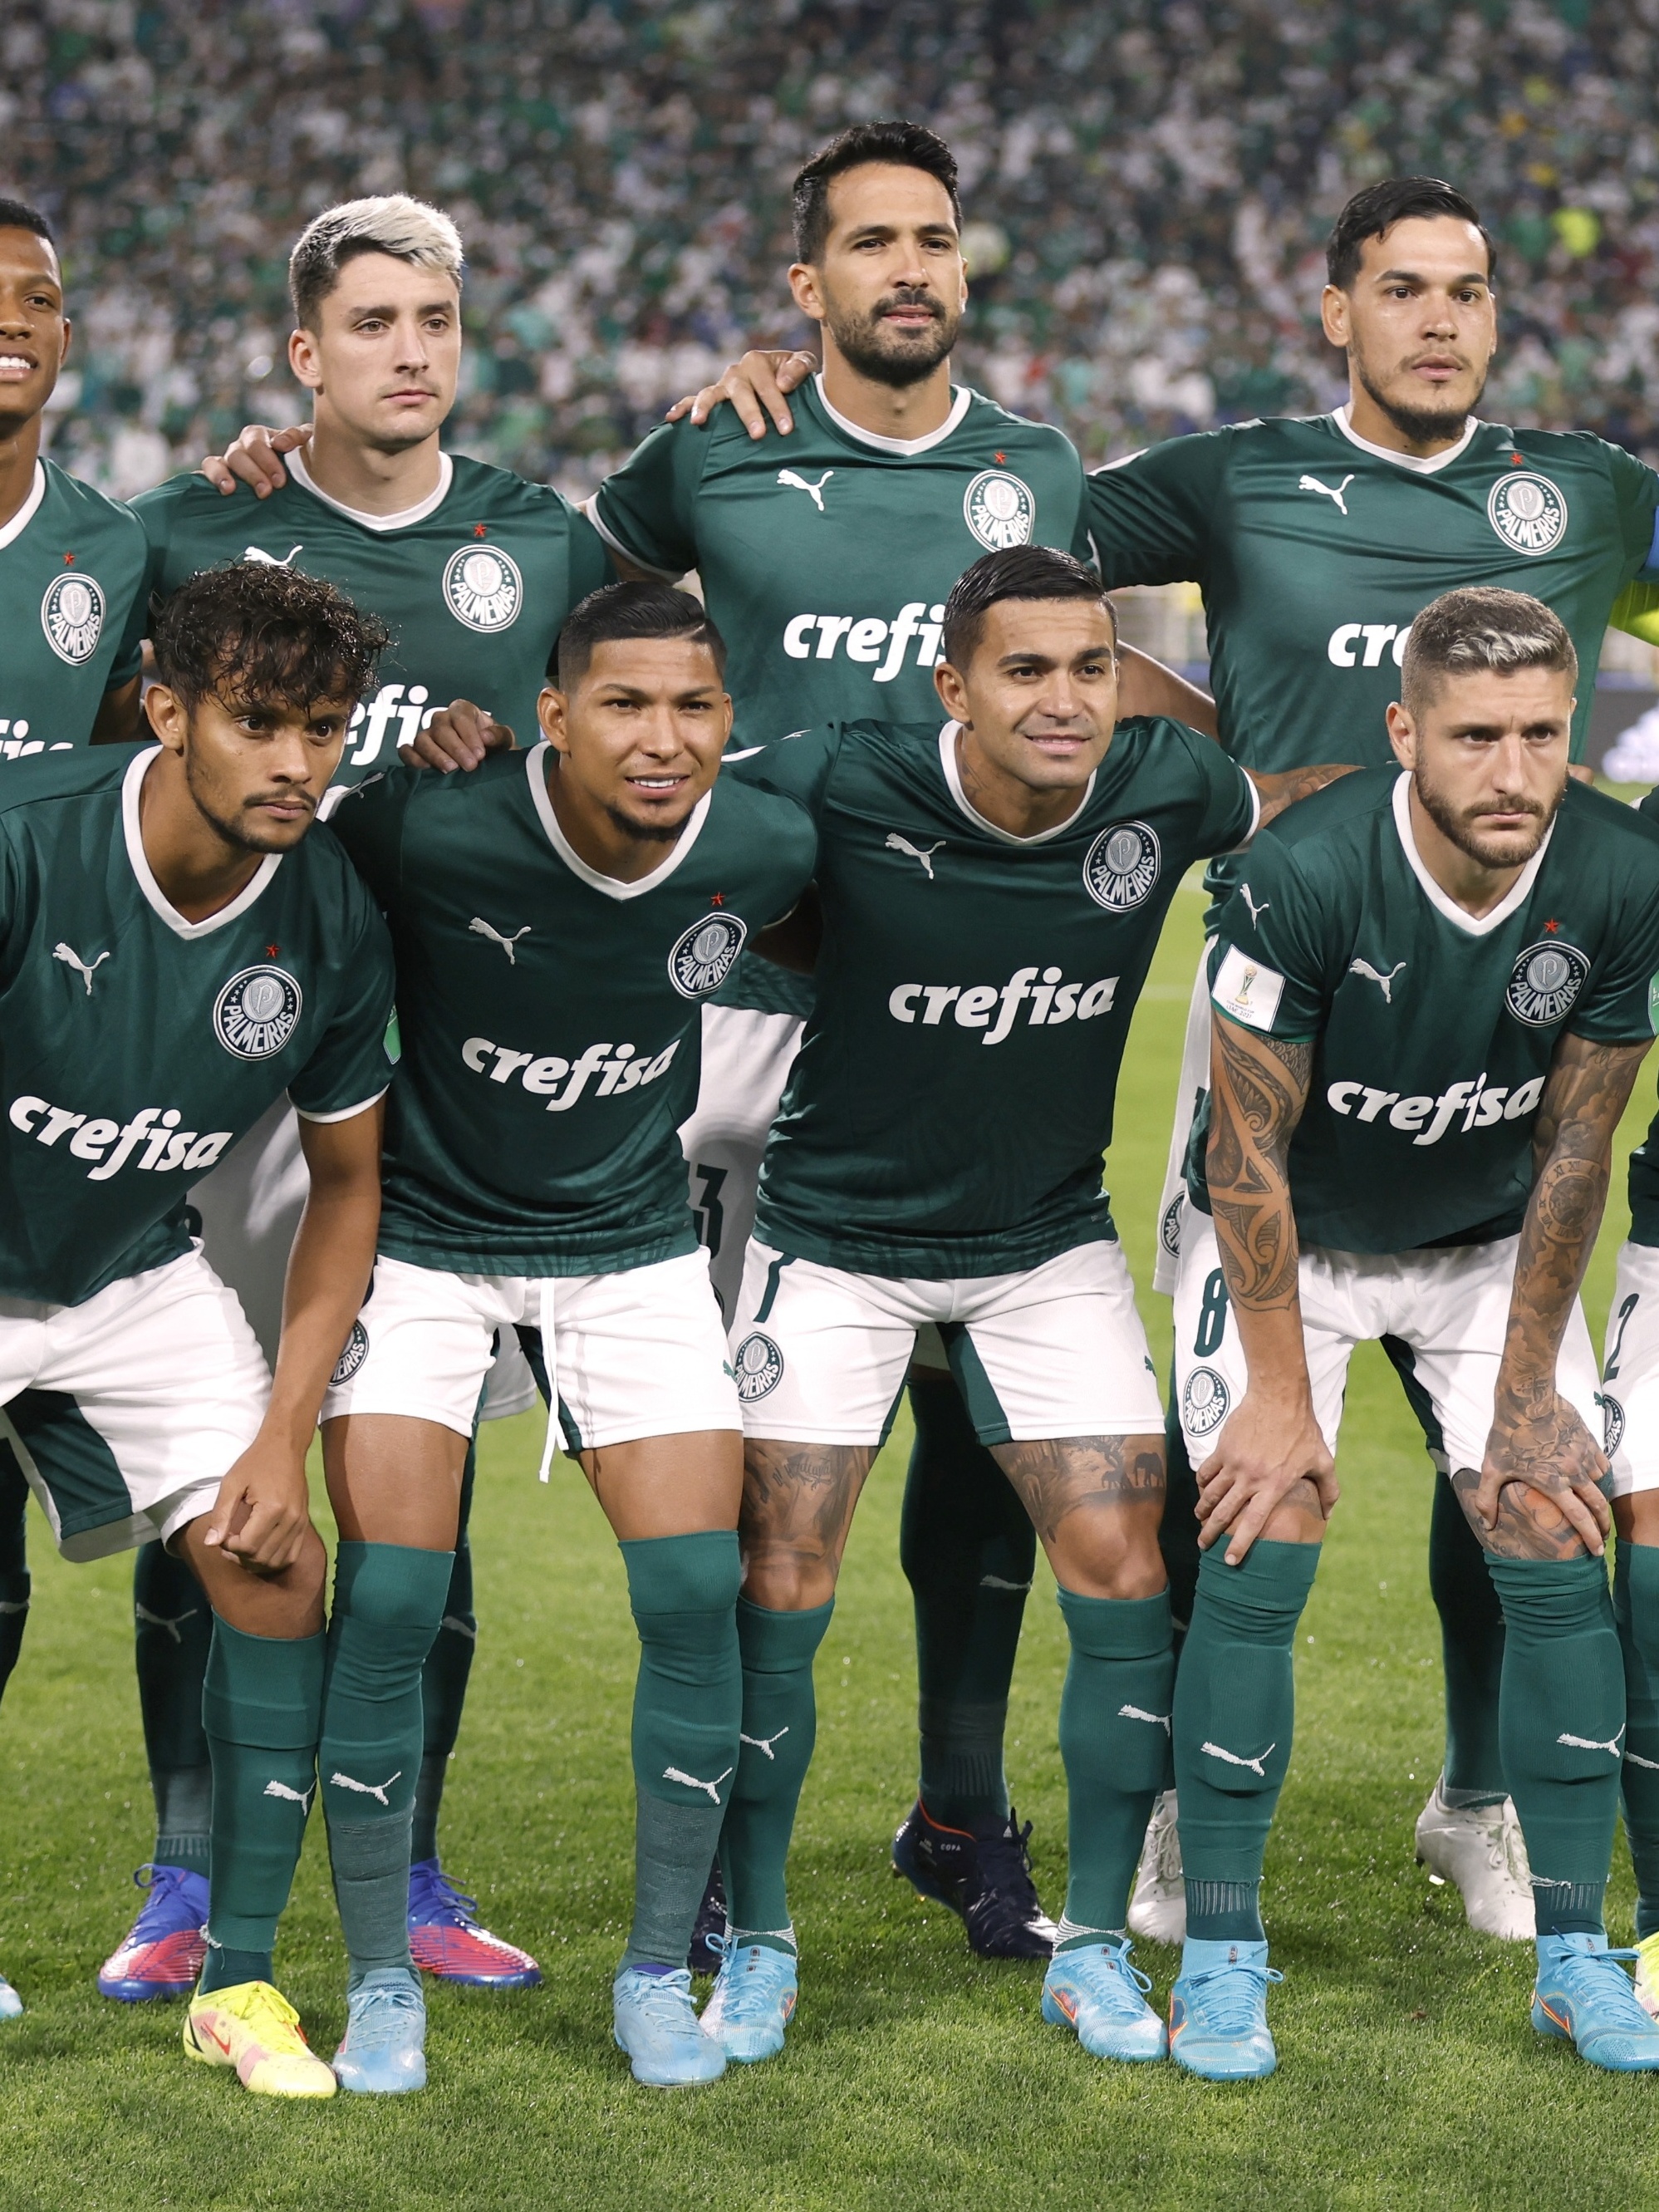 Vice do Mundial de Clubes, Palmeiras recebe R$ 21,1 milhões